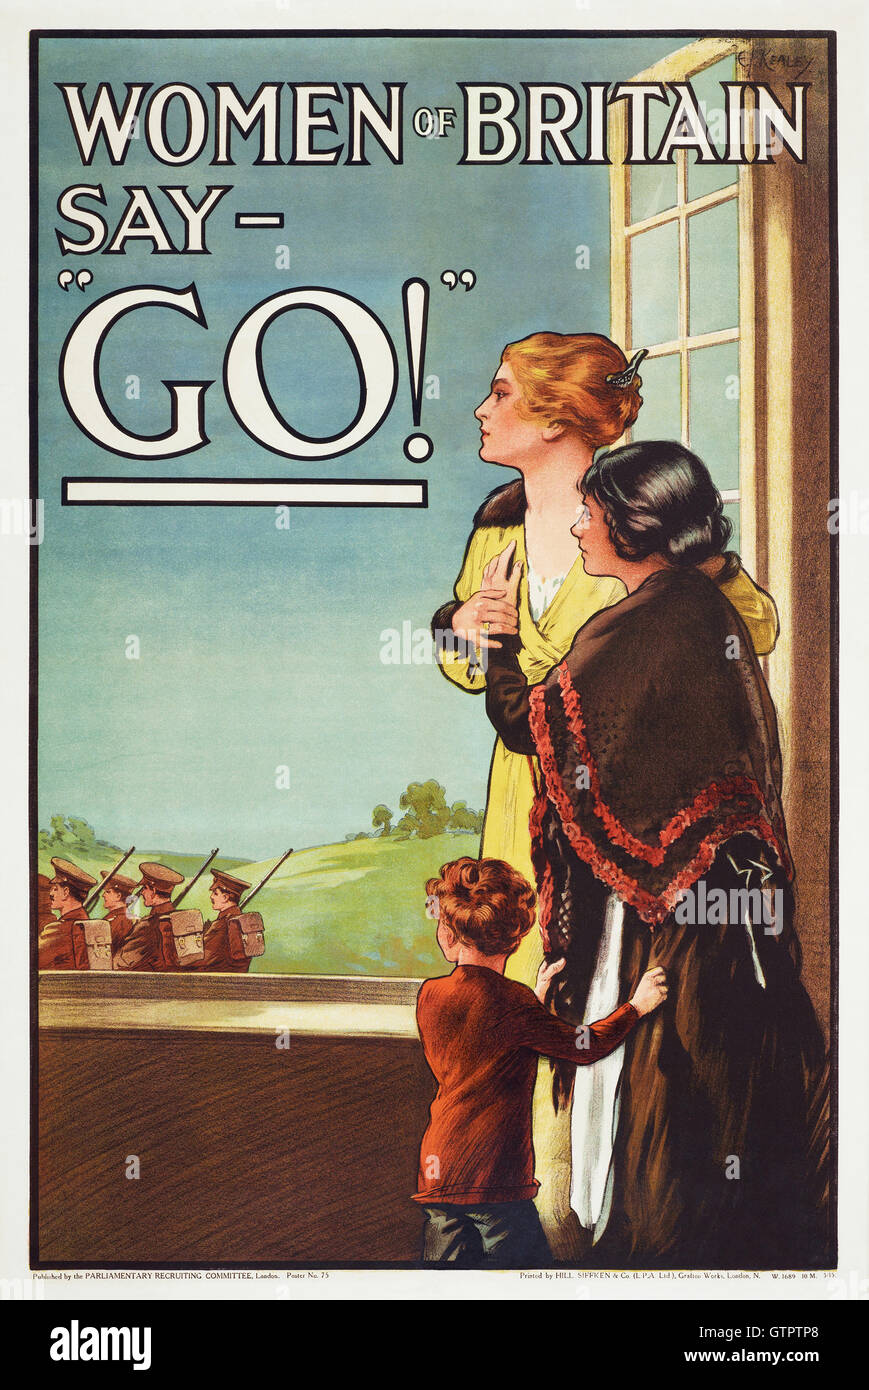 FRAUEN VON VISITBRITAIN SAGEN - "GO!"  Plakat von dem Parlamentsausschuss Recruting im Mai 1915 ausgestellt. Der Künstler war E J Kealey Stockfoto